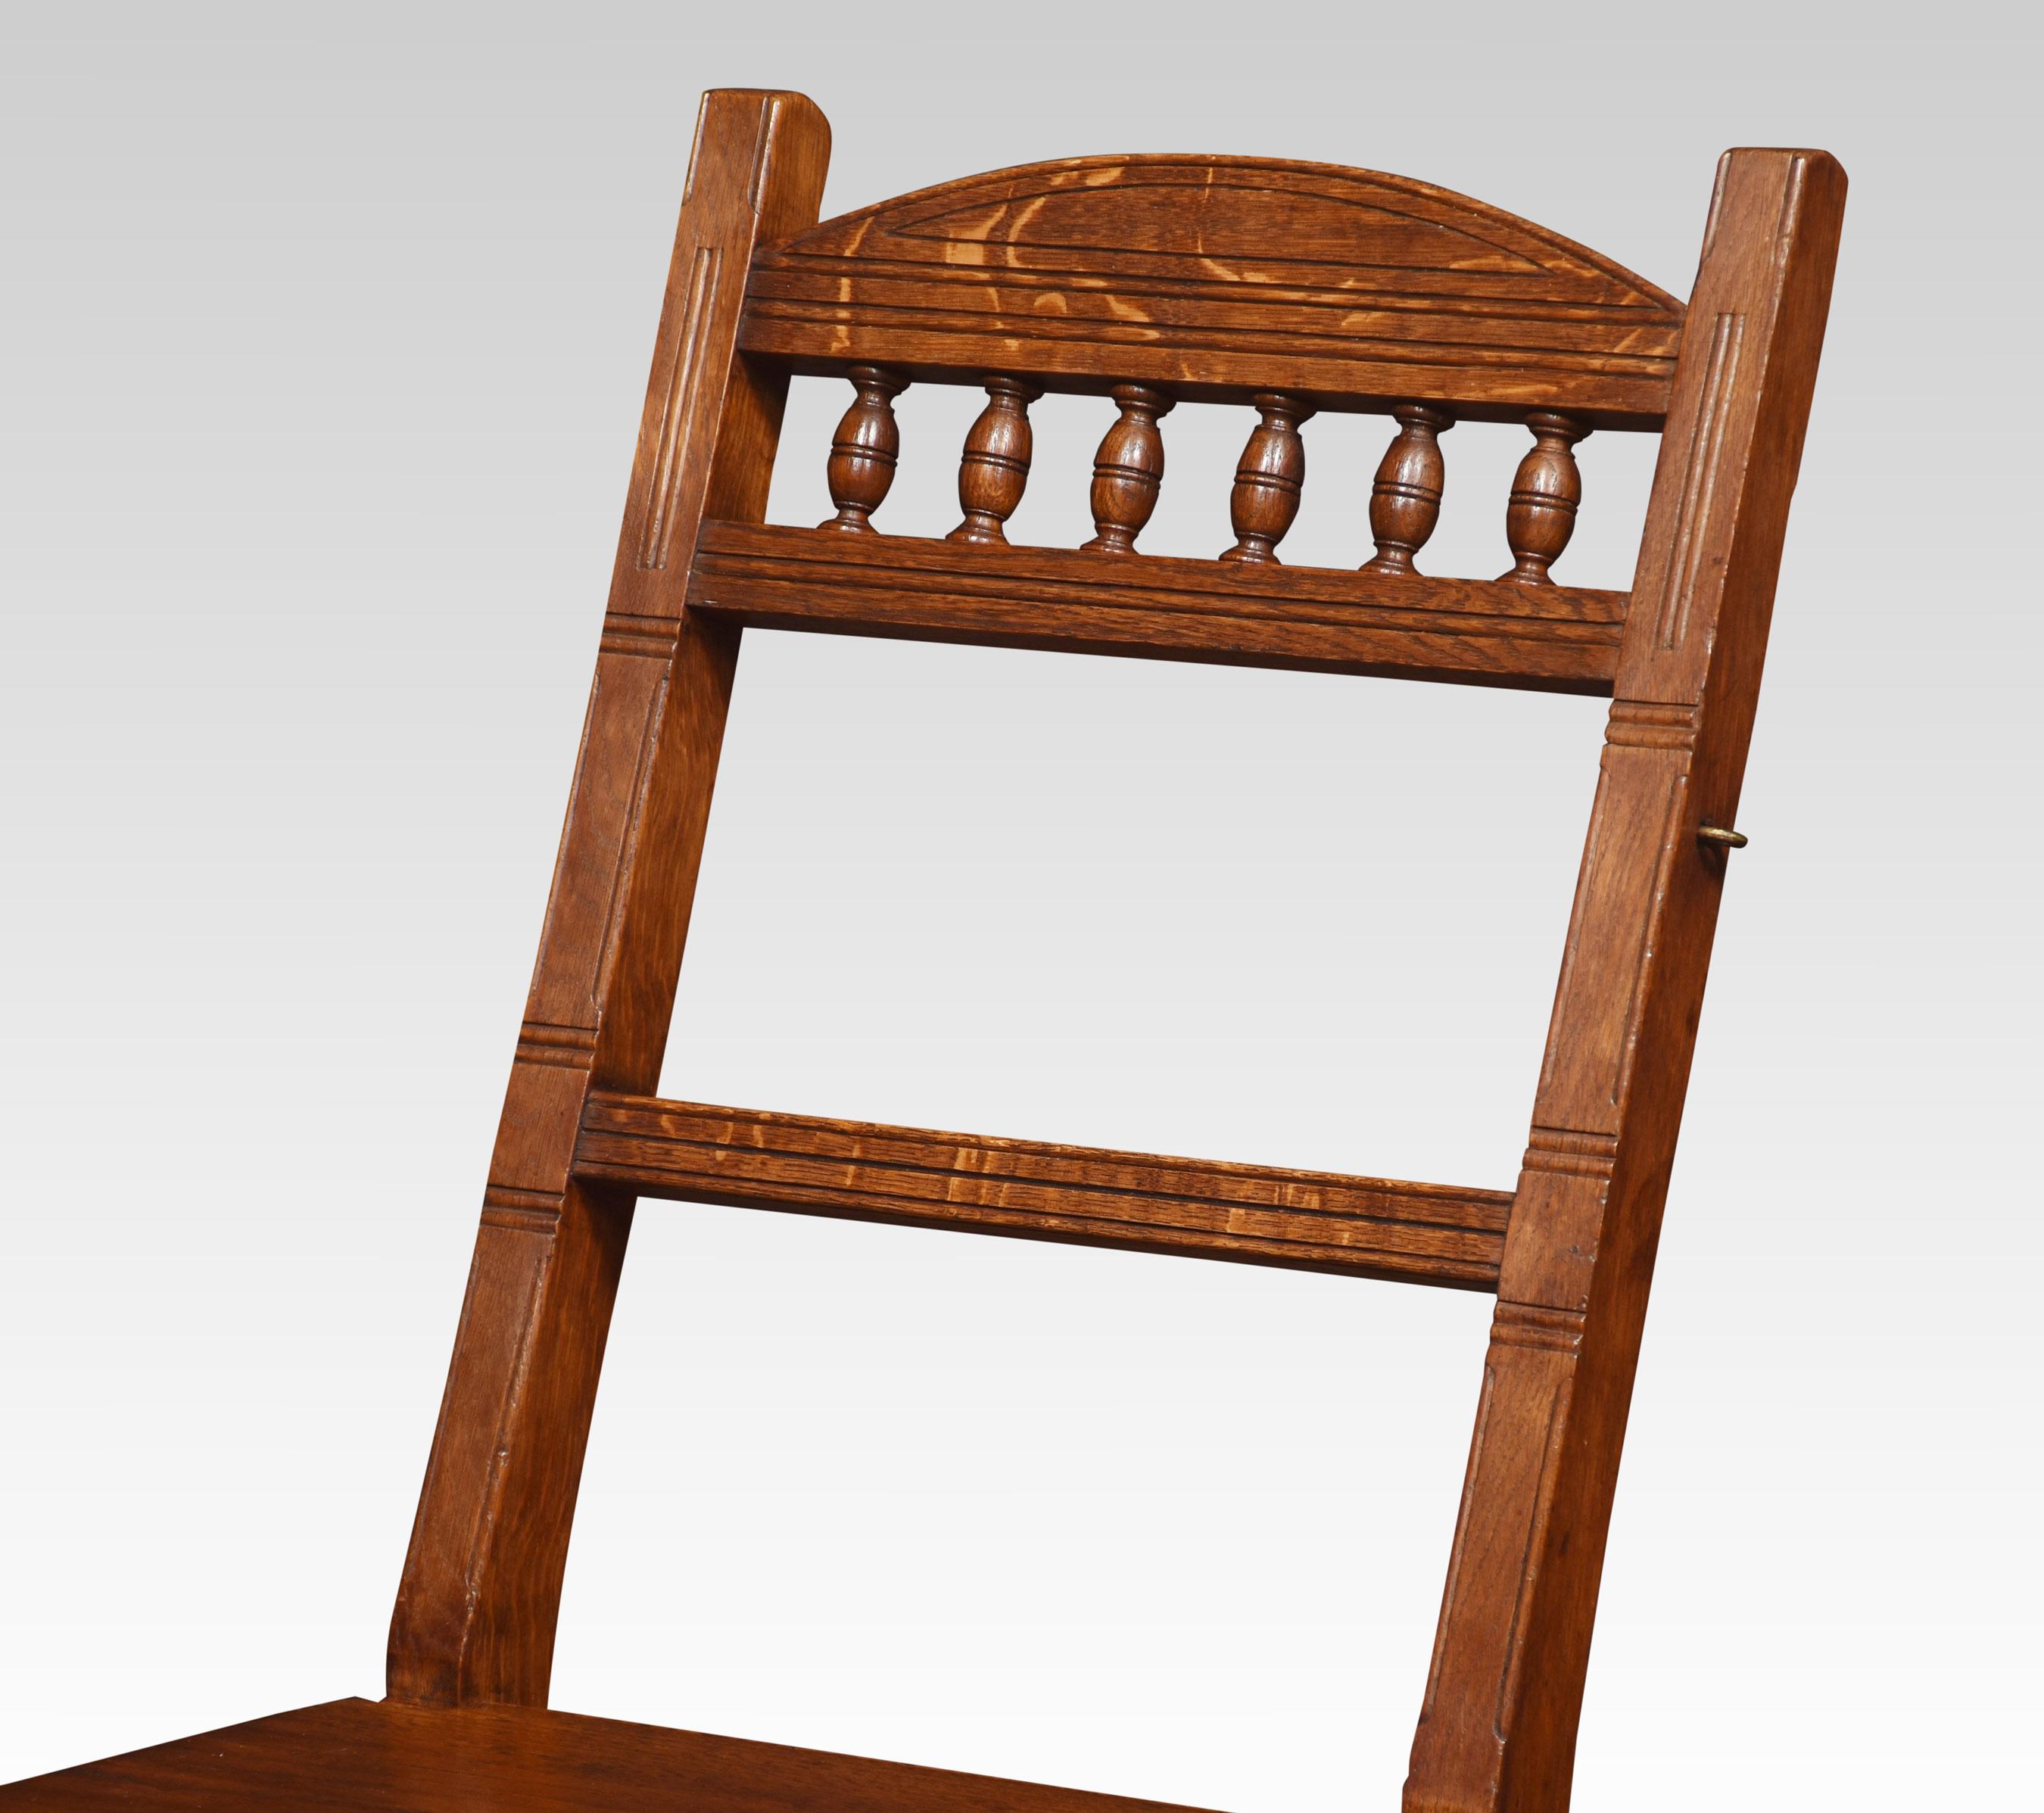 Chaise métamorphique en chêne du 19ème siècle, avec un dossier en fuseau au-dessus d'un siège solide, la chaise s'ouvre sur un ensemble robuste de marches de bibliothèque.
Dimensions
Hauteur 35 pouces hauteur au siège 17.5 pouces
Largeur 17